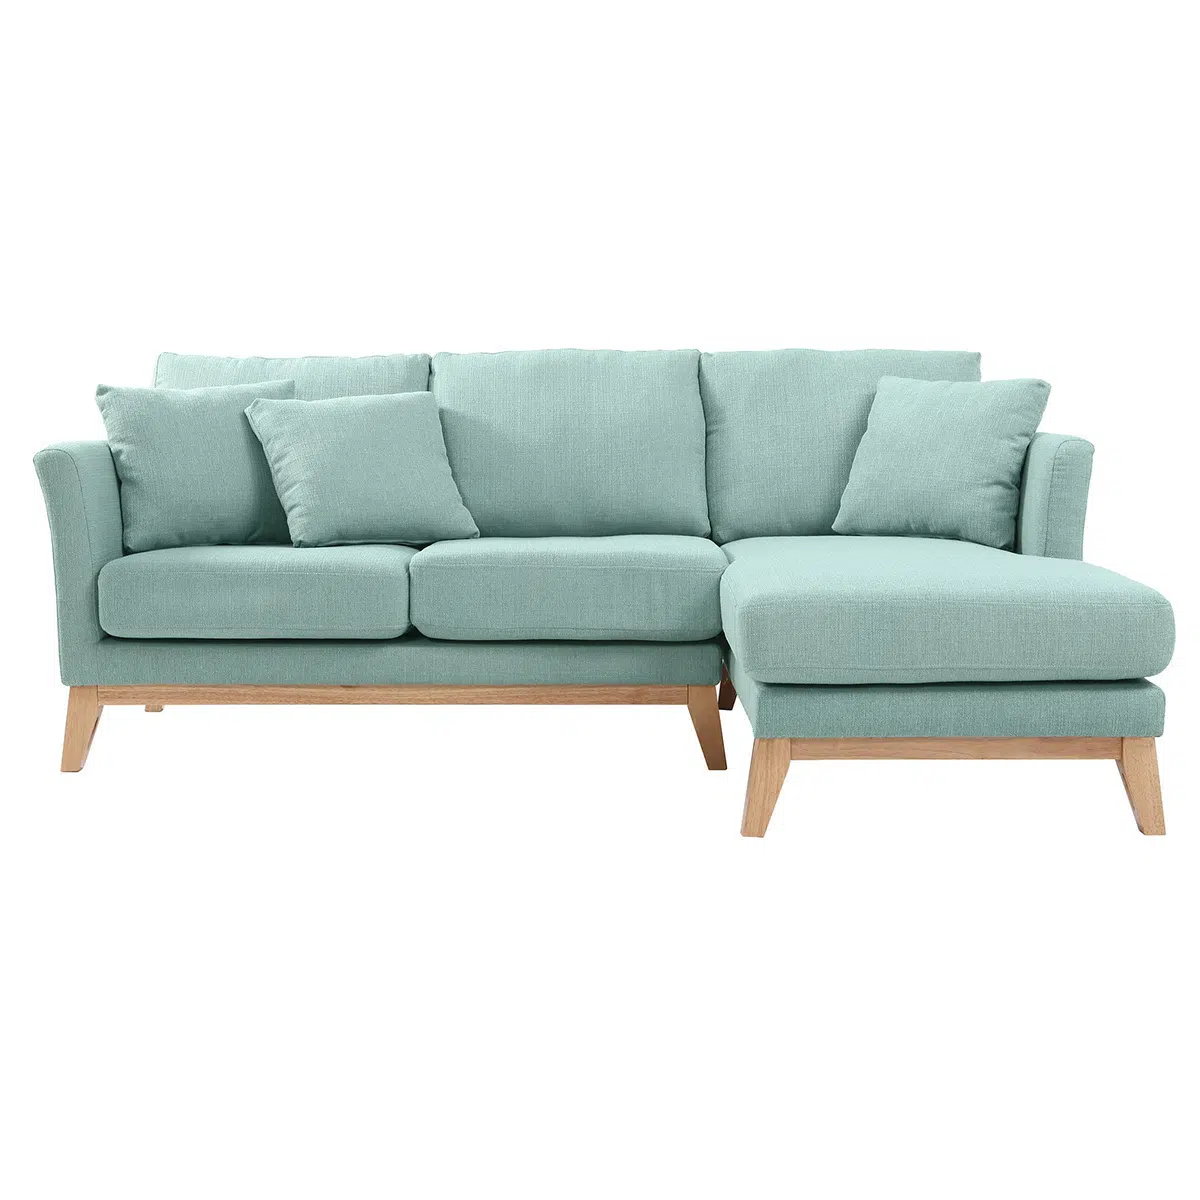 Canapé d'angle droit déhoussable 4 places en tissu vert lagon et bois clair OSLO